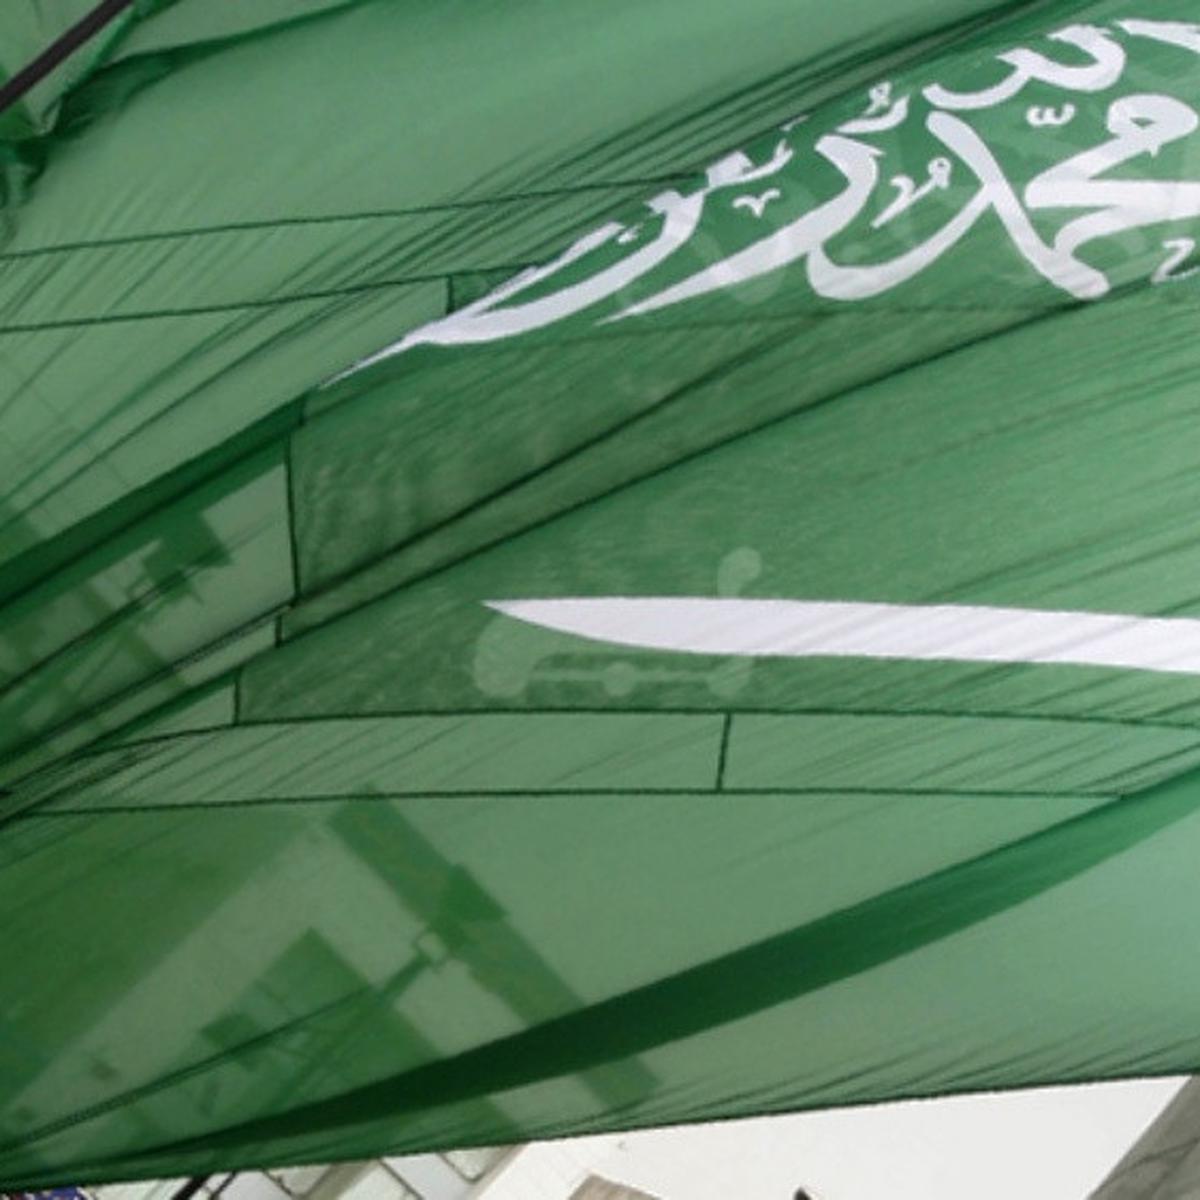 Bendera arab saudi yang benar adalah